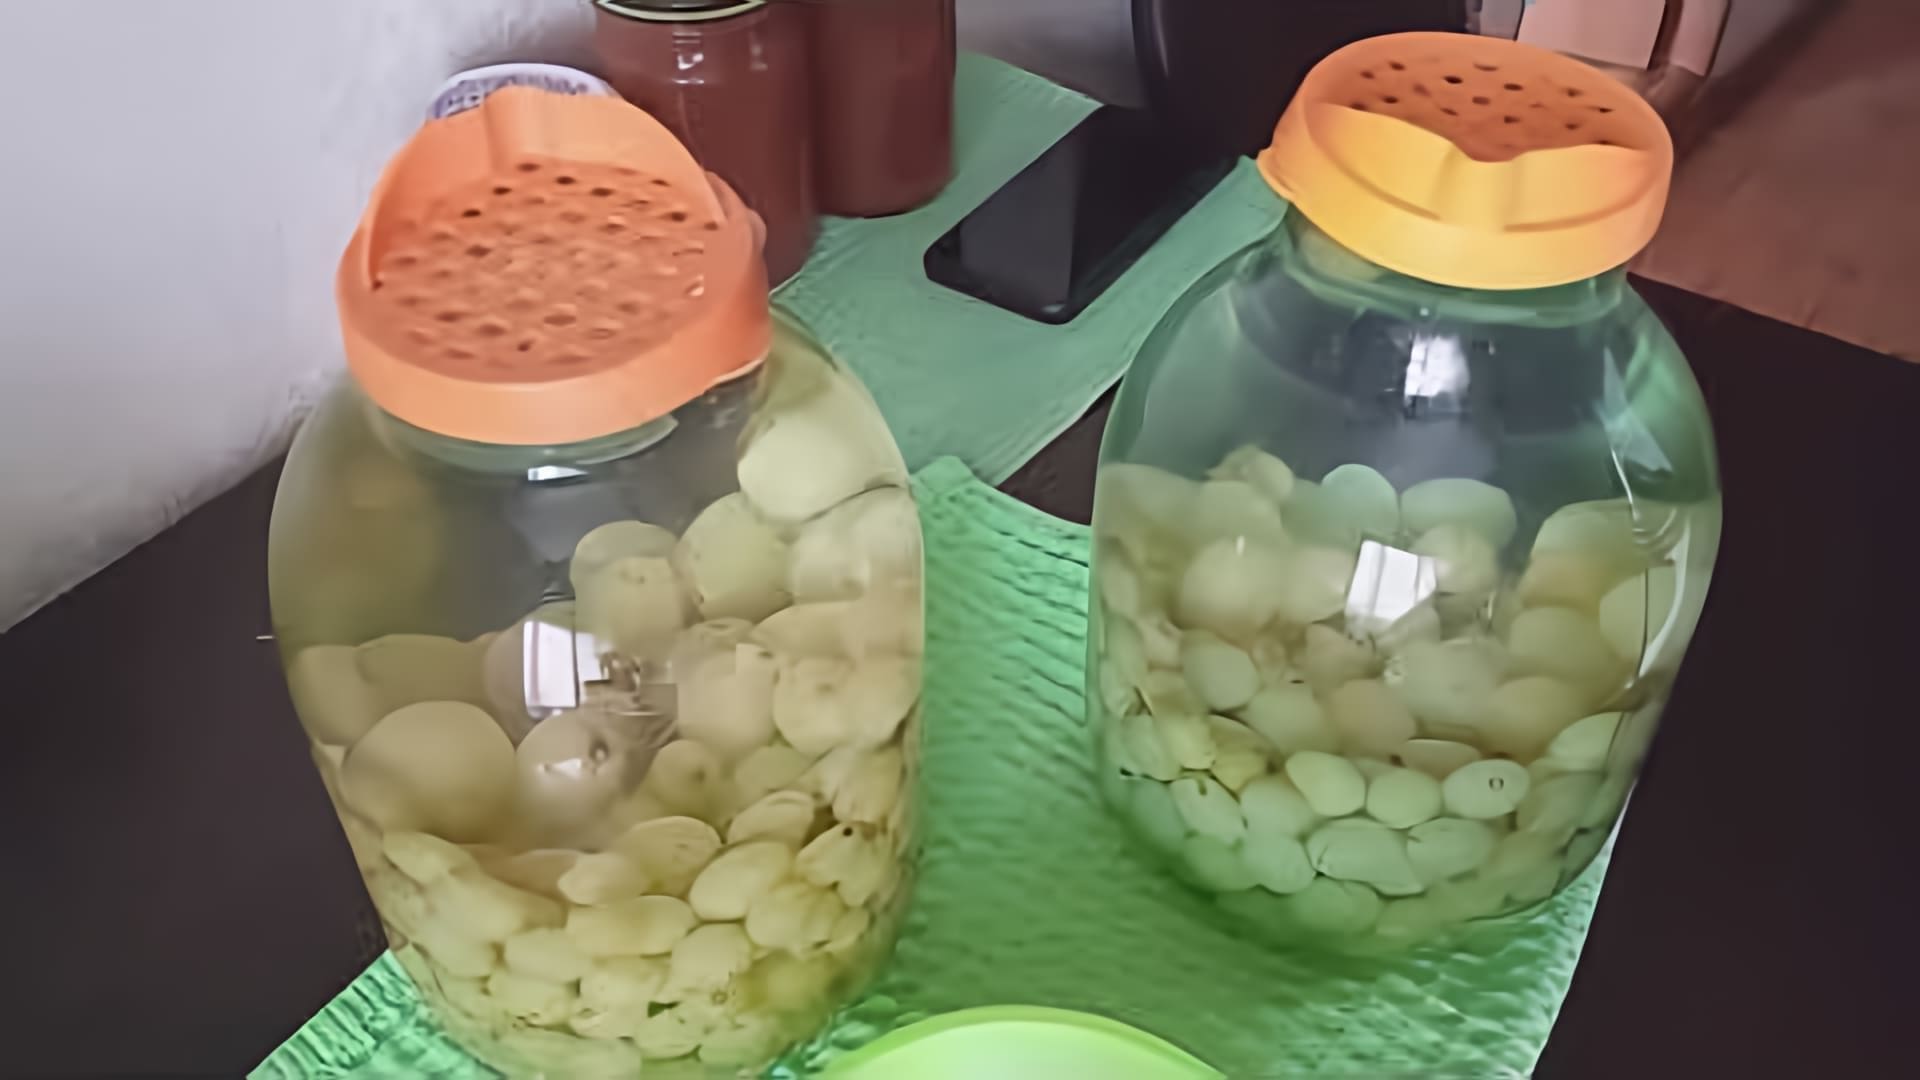 В этом видео демонстрируется процесс приготовления компота из винограда на зиму